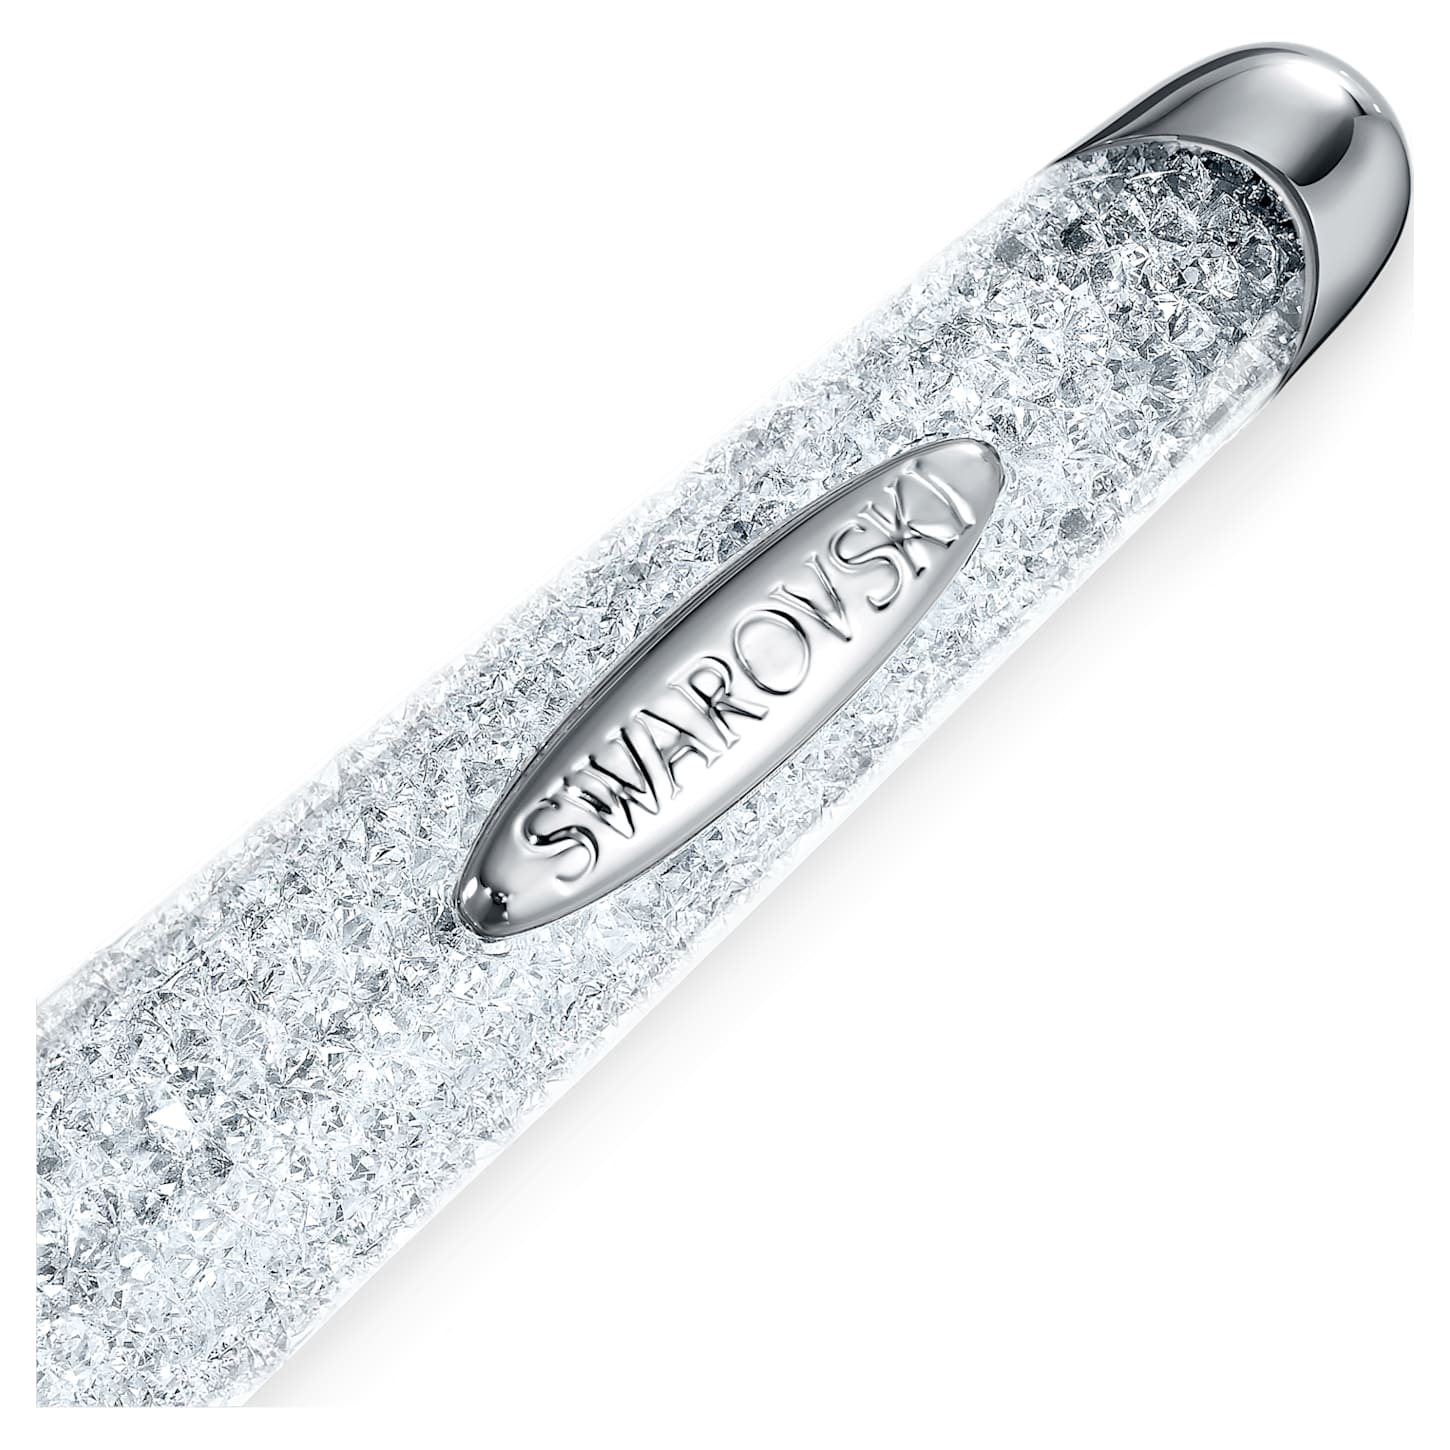 Crystalline Nova - Silberweiß - Kugelschreiber - Swarovski